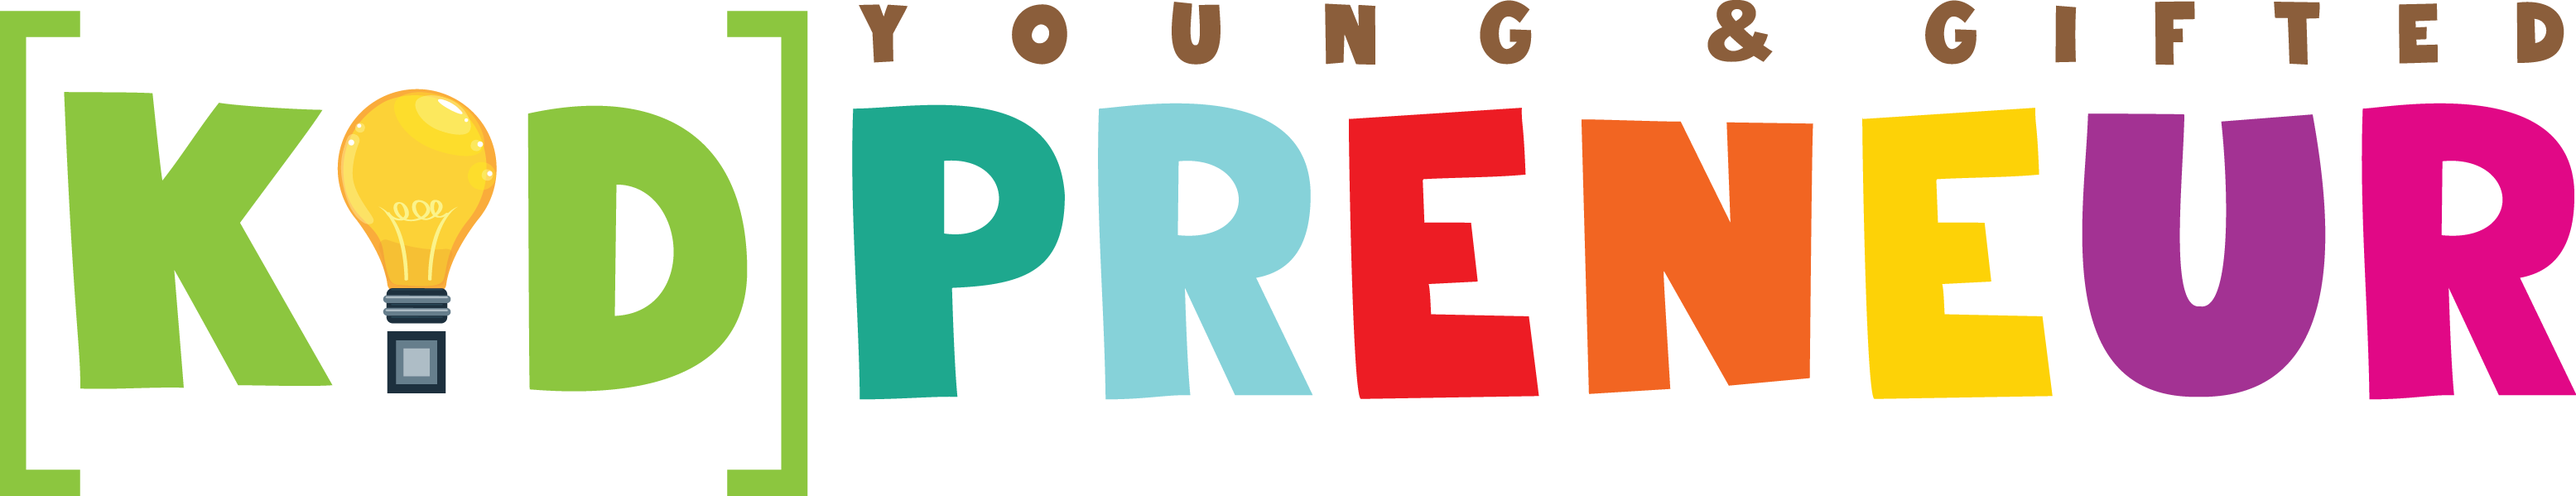 ygkidpreneur full color logo